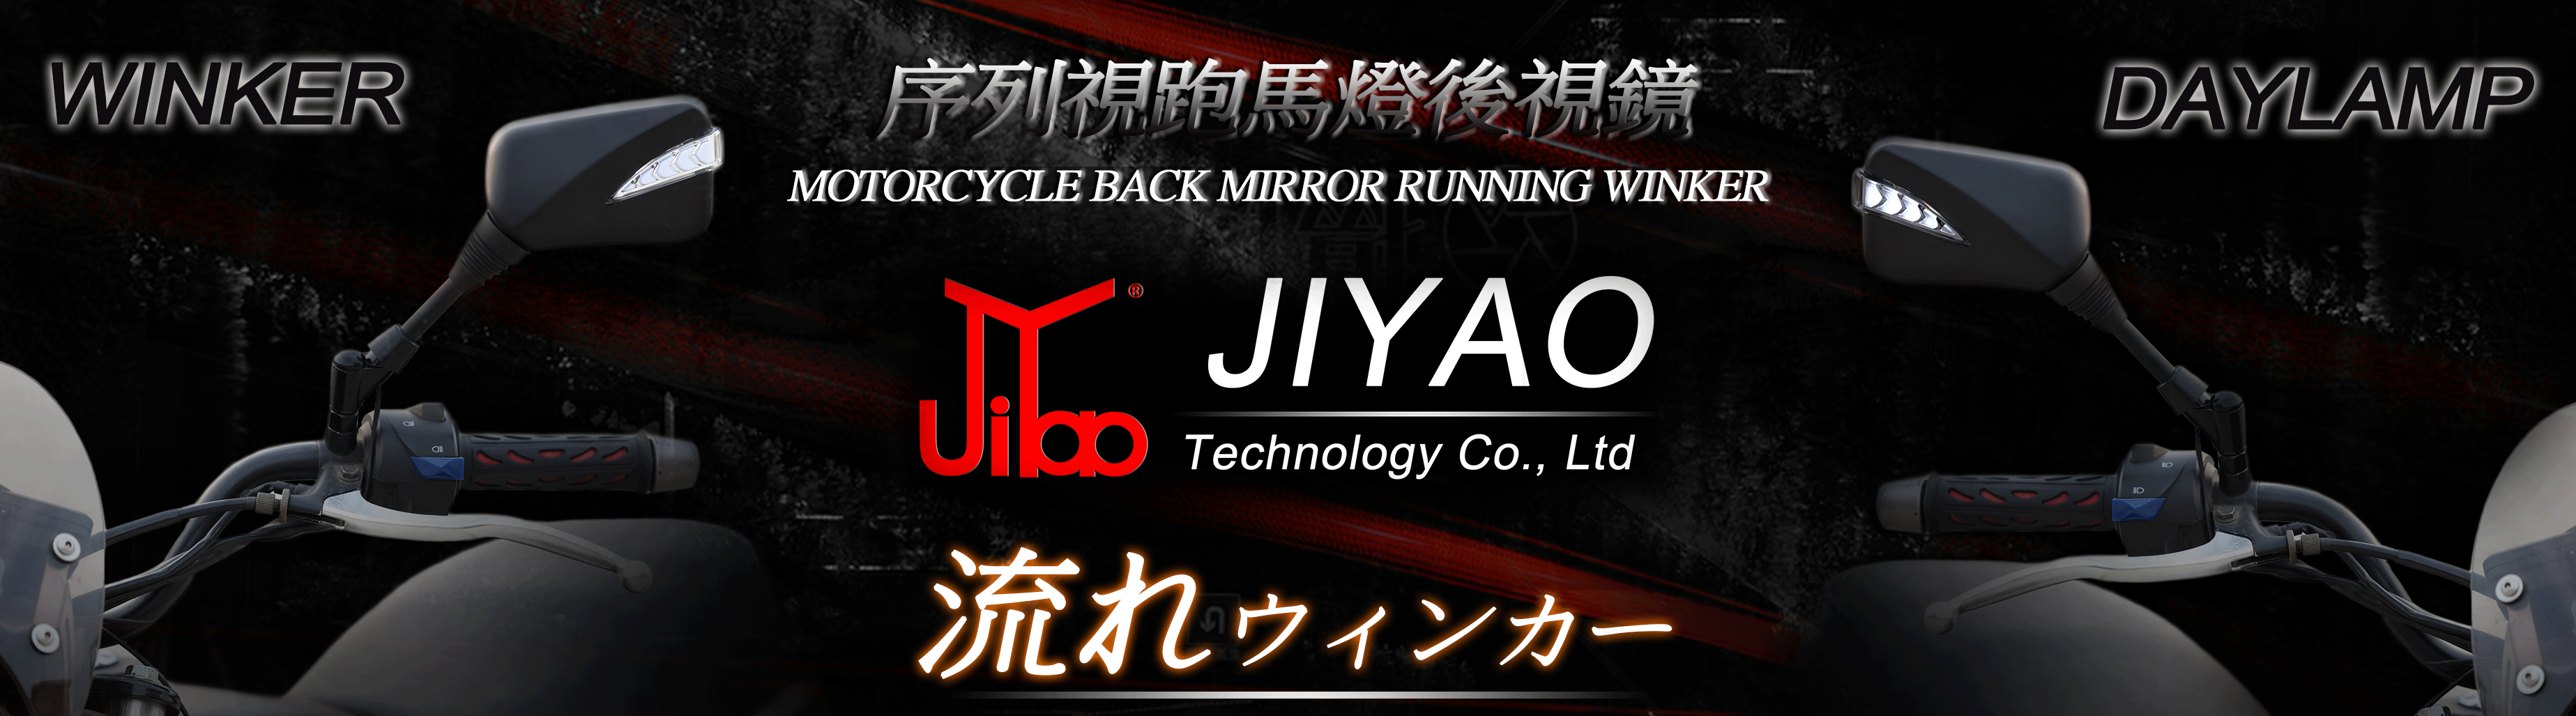 JY005-M 序列式跑馬燈後照鏡